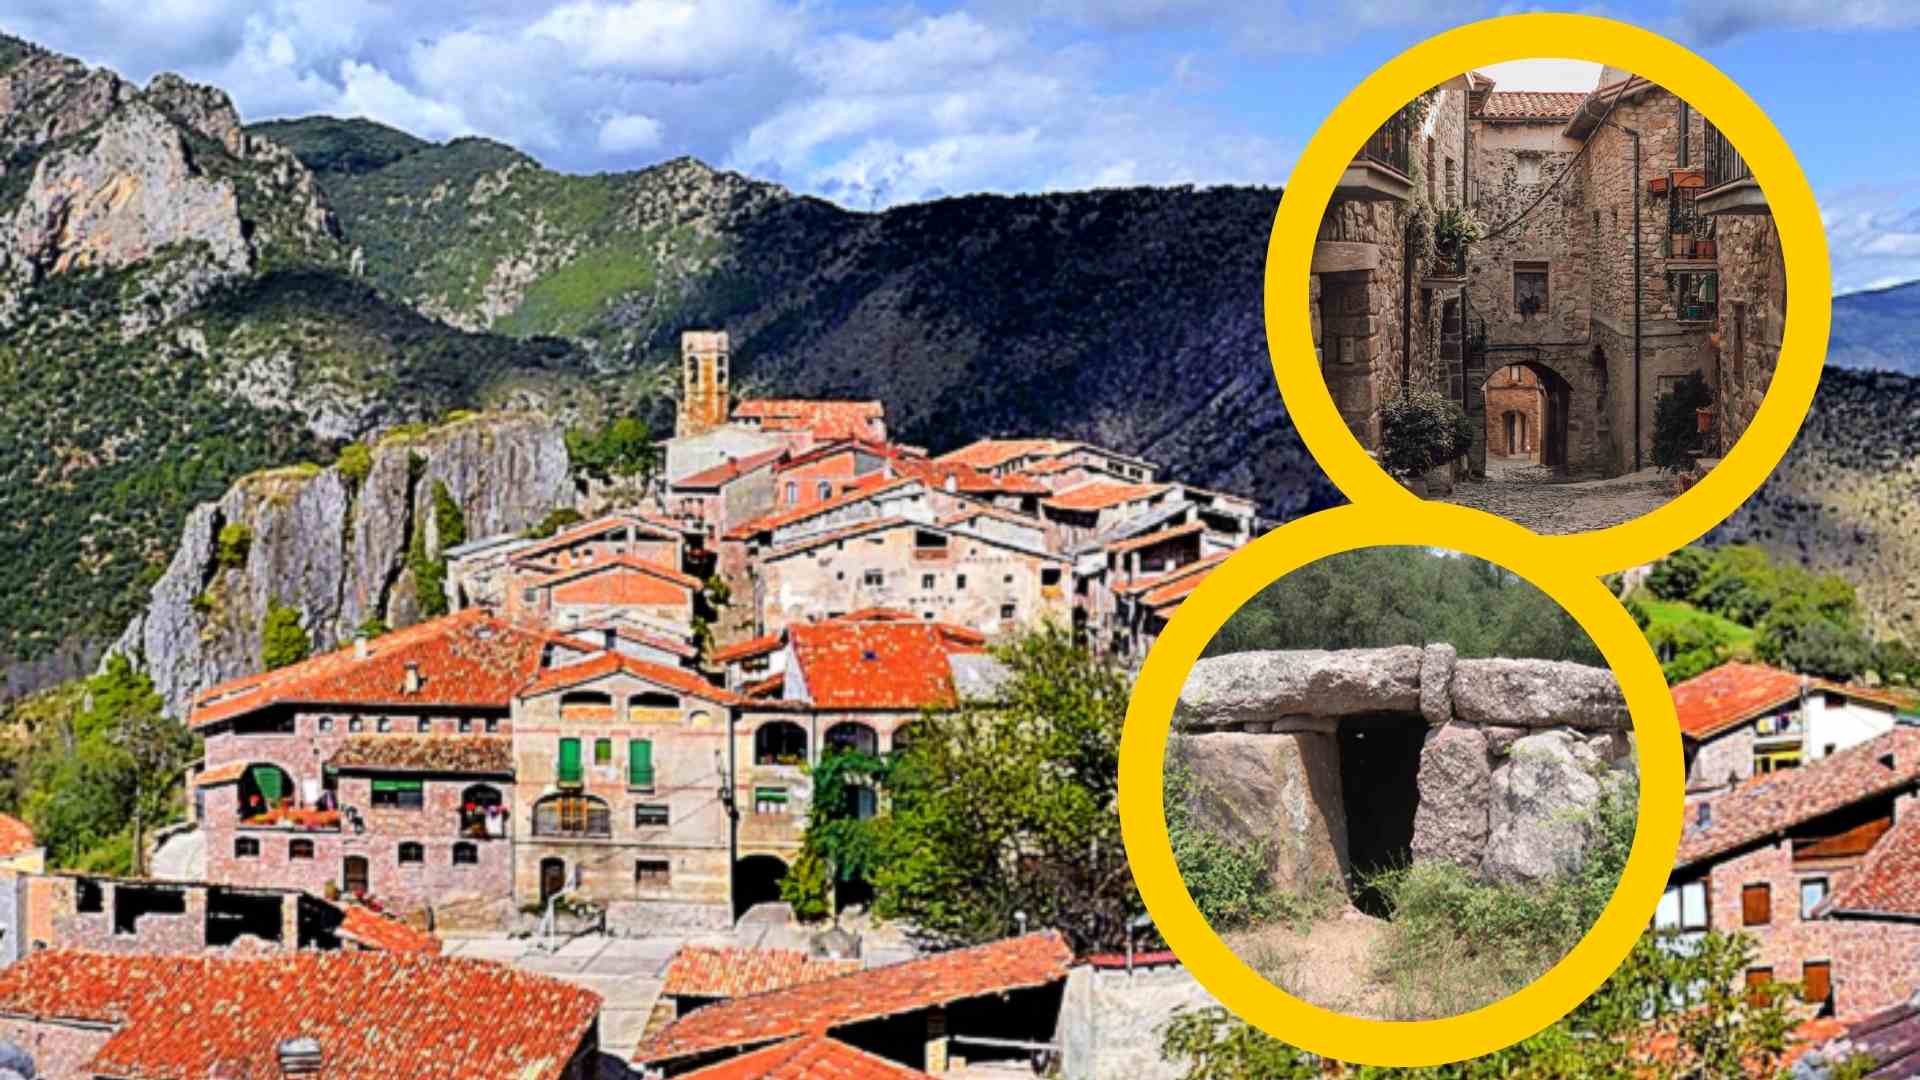 El bonic poble català envoltat per muntanyes que tenia un castell medieval